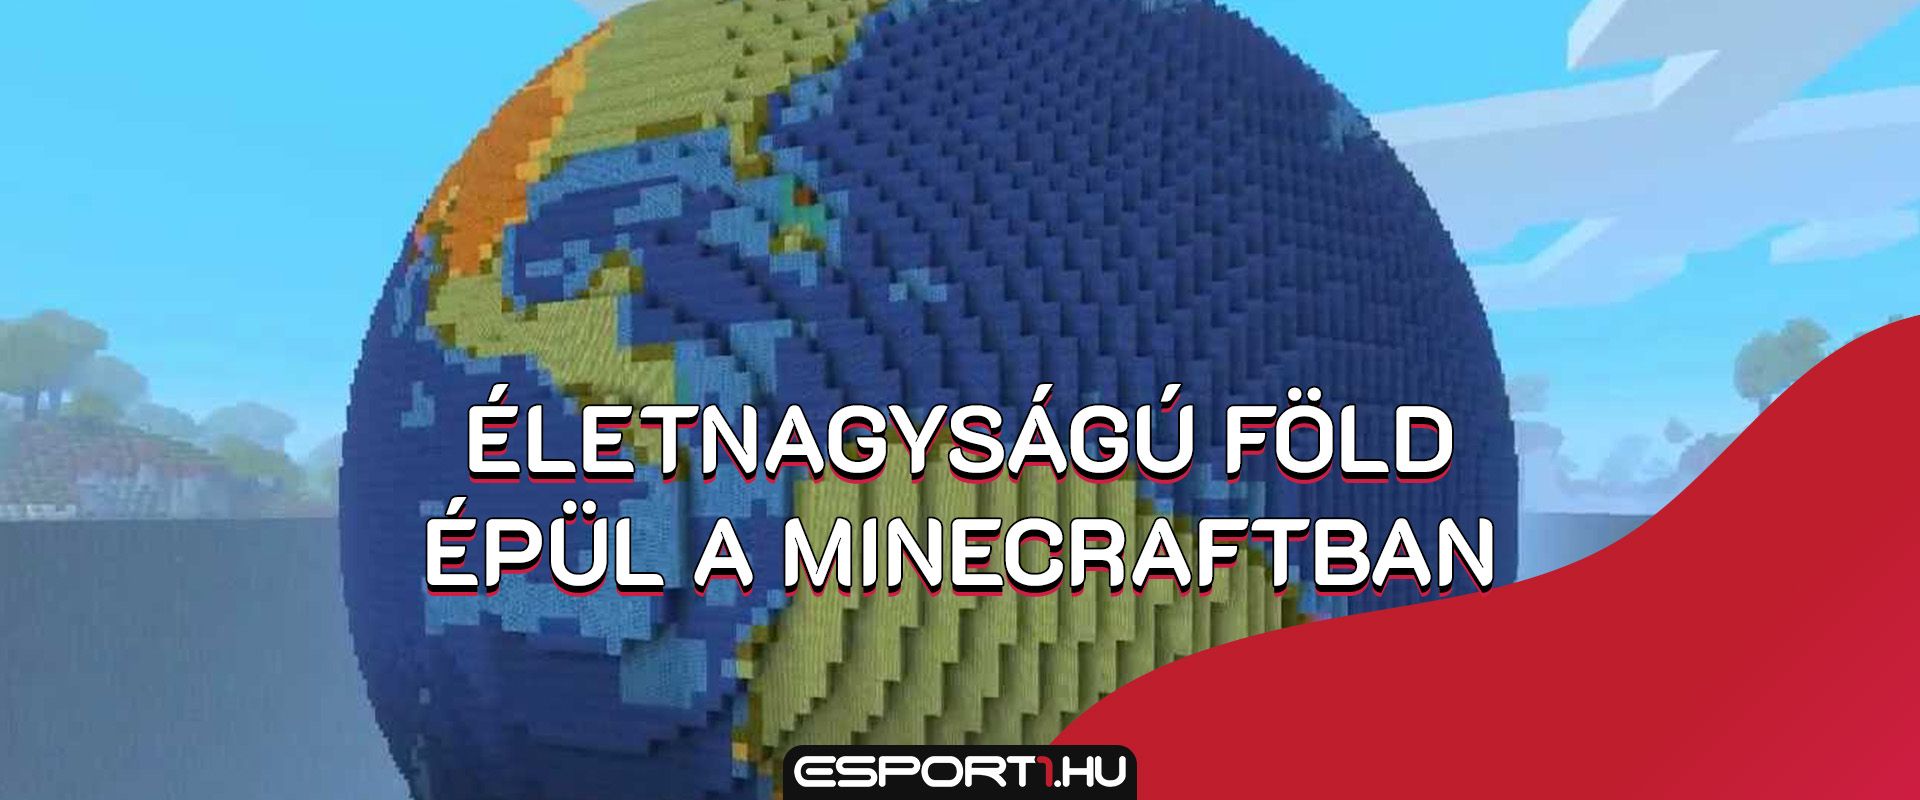 Minecraftban modellezné le méretarányosan az egész Földet egy lelkes játékos